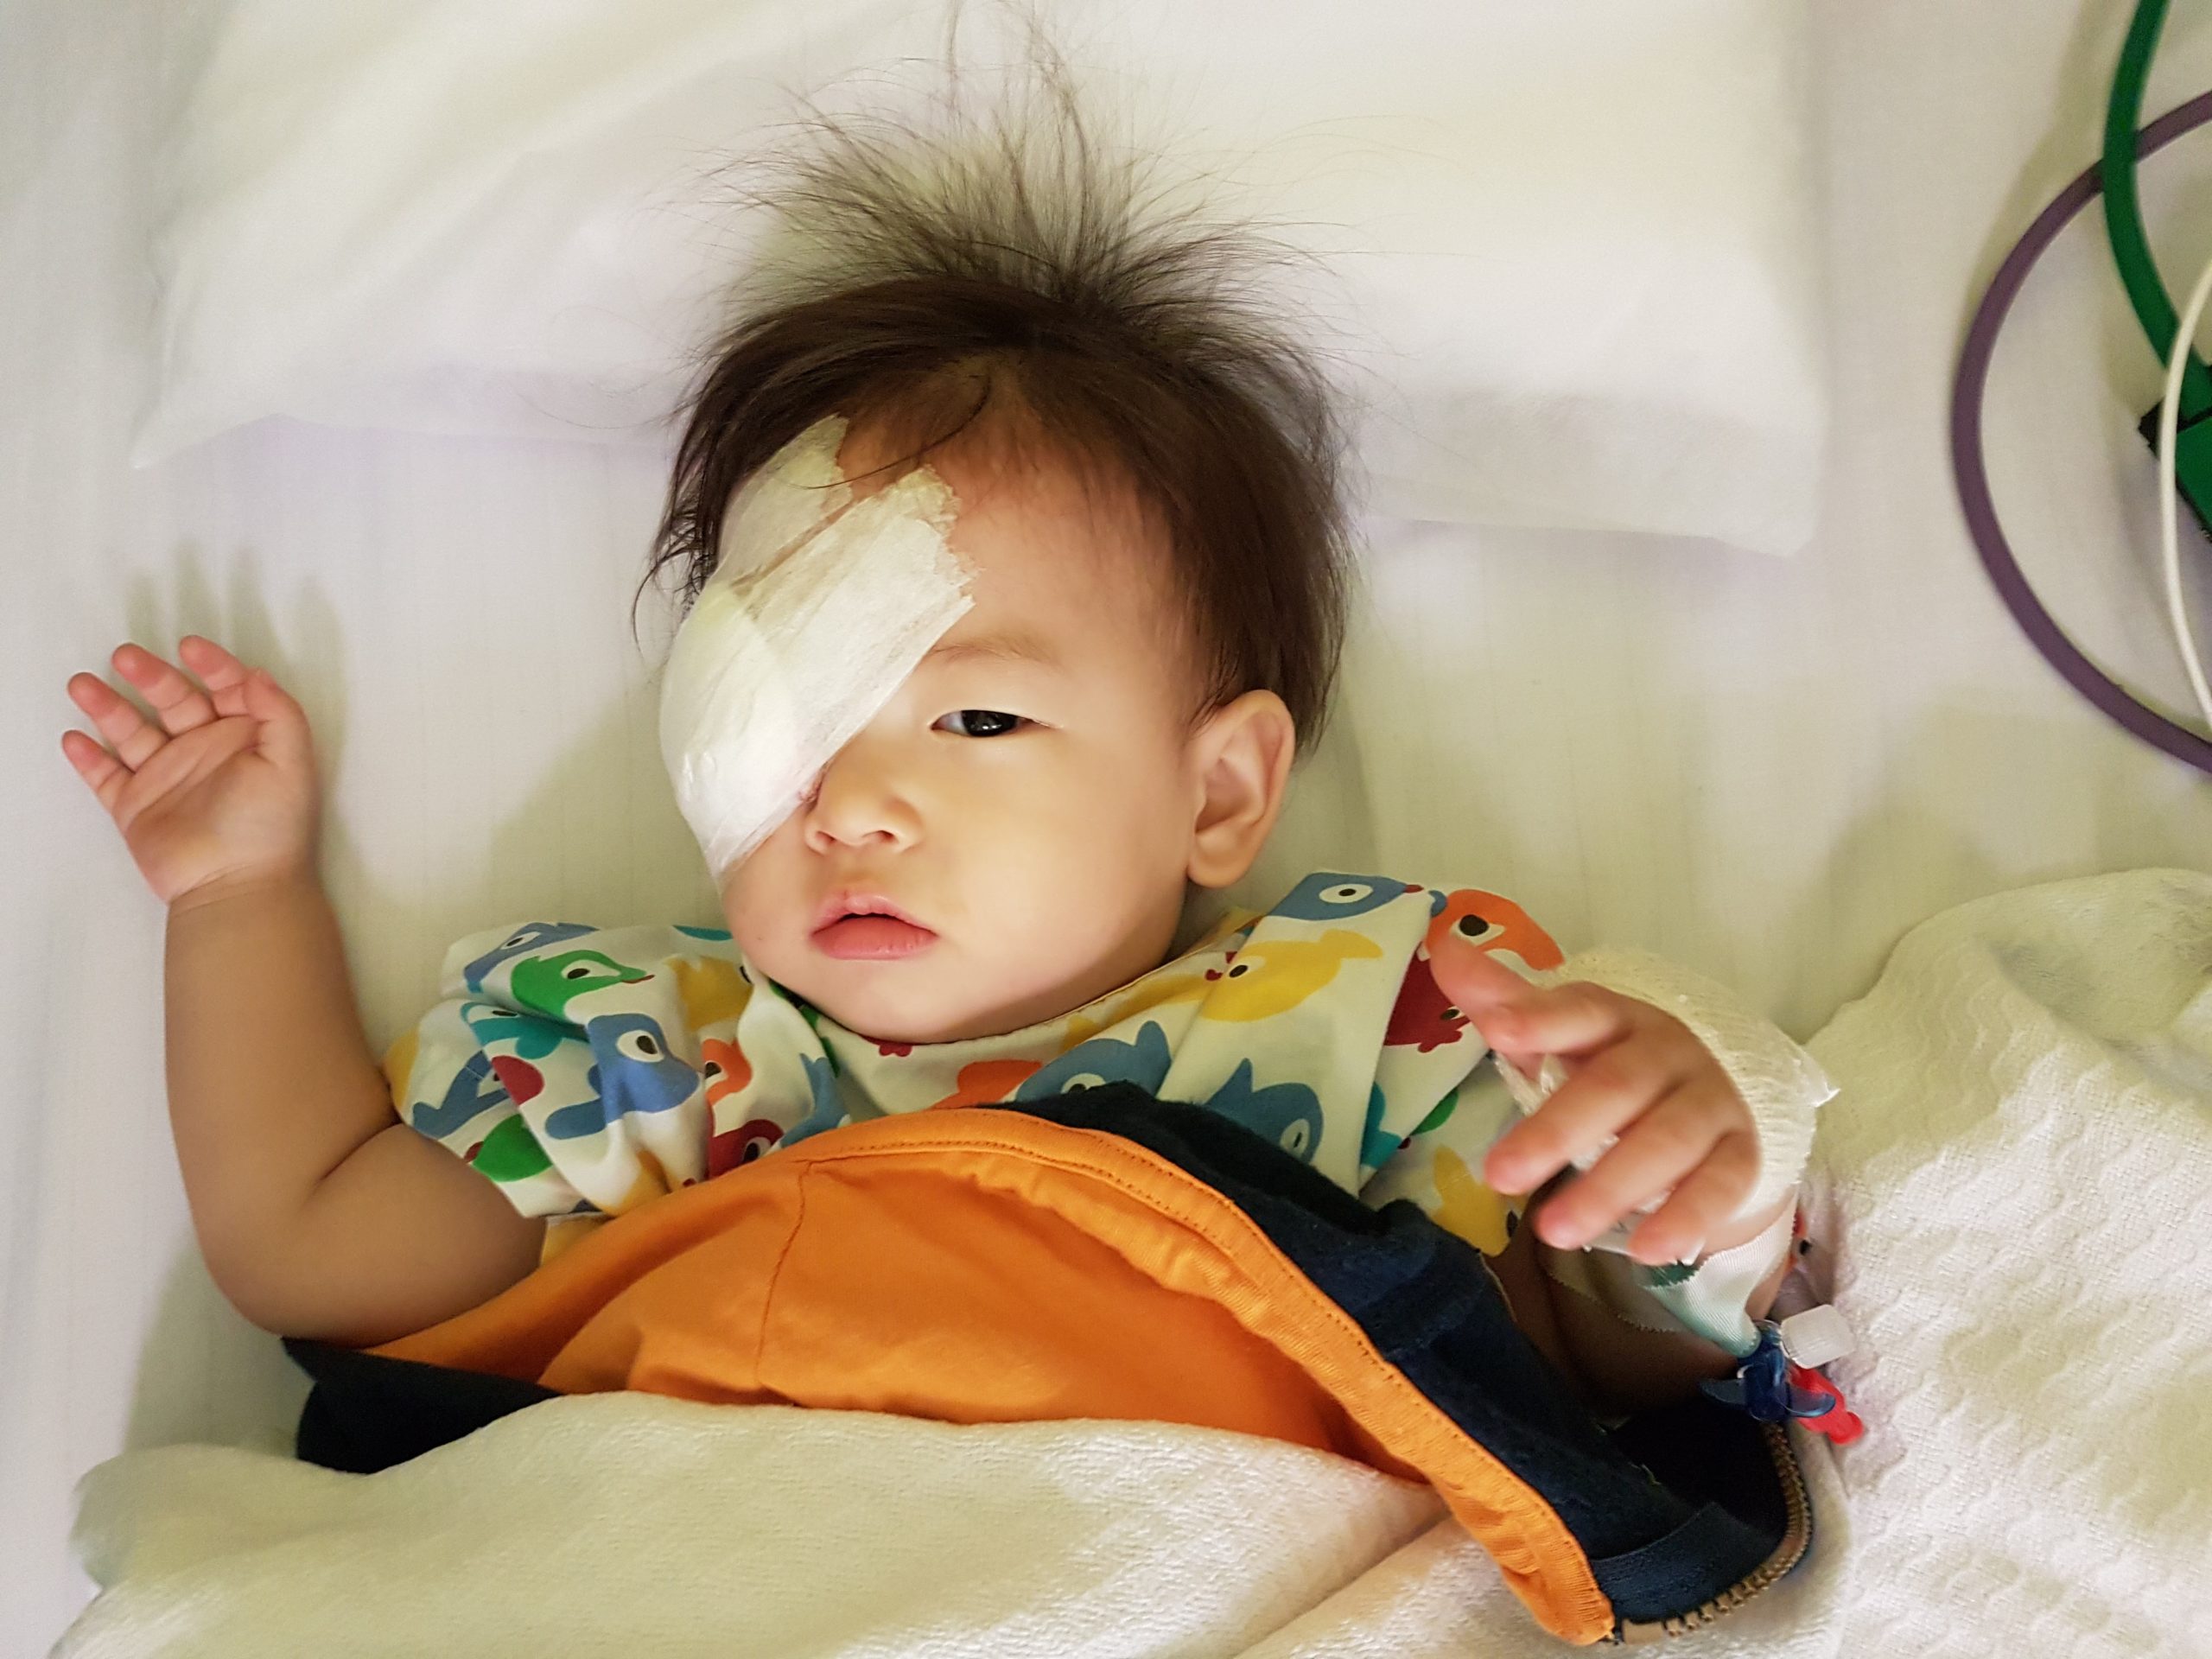 retinoblastoma in children